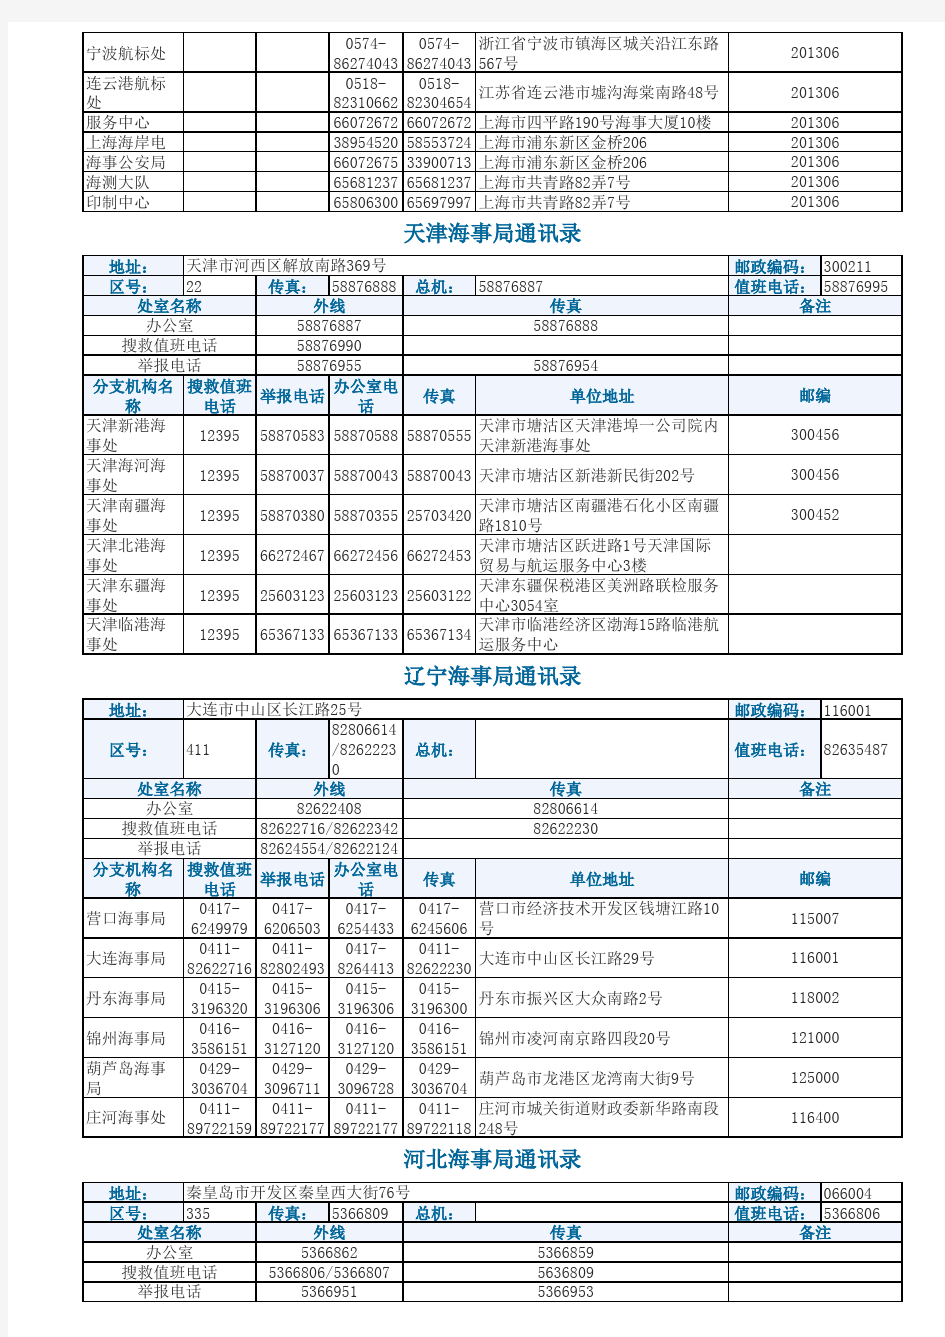 中国海事局通讯录(20150401)